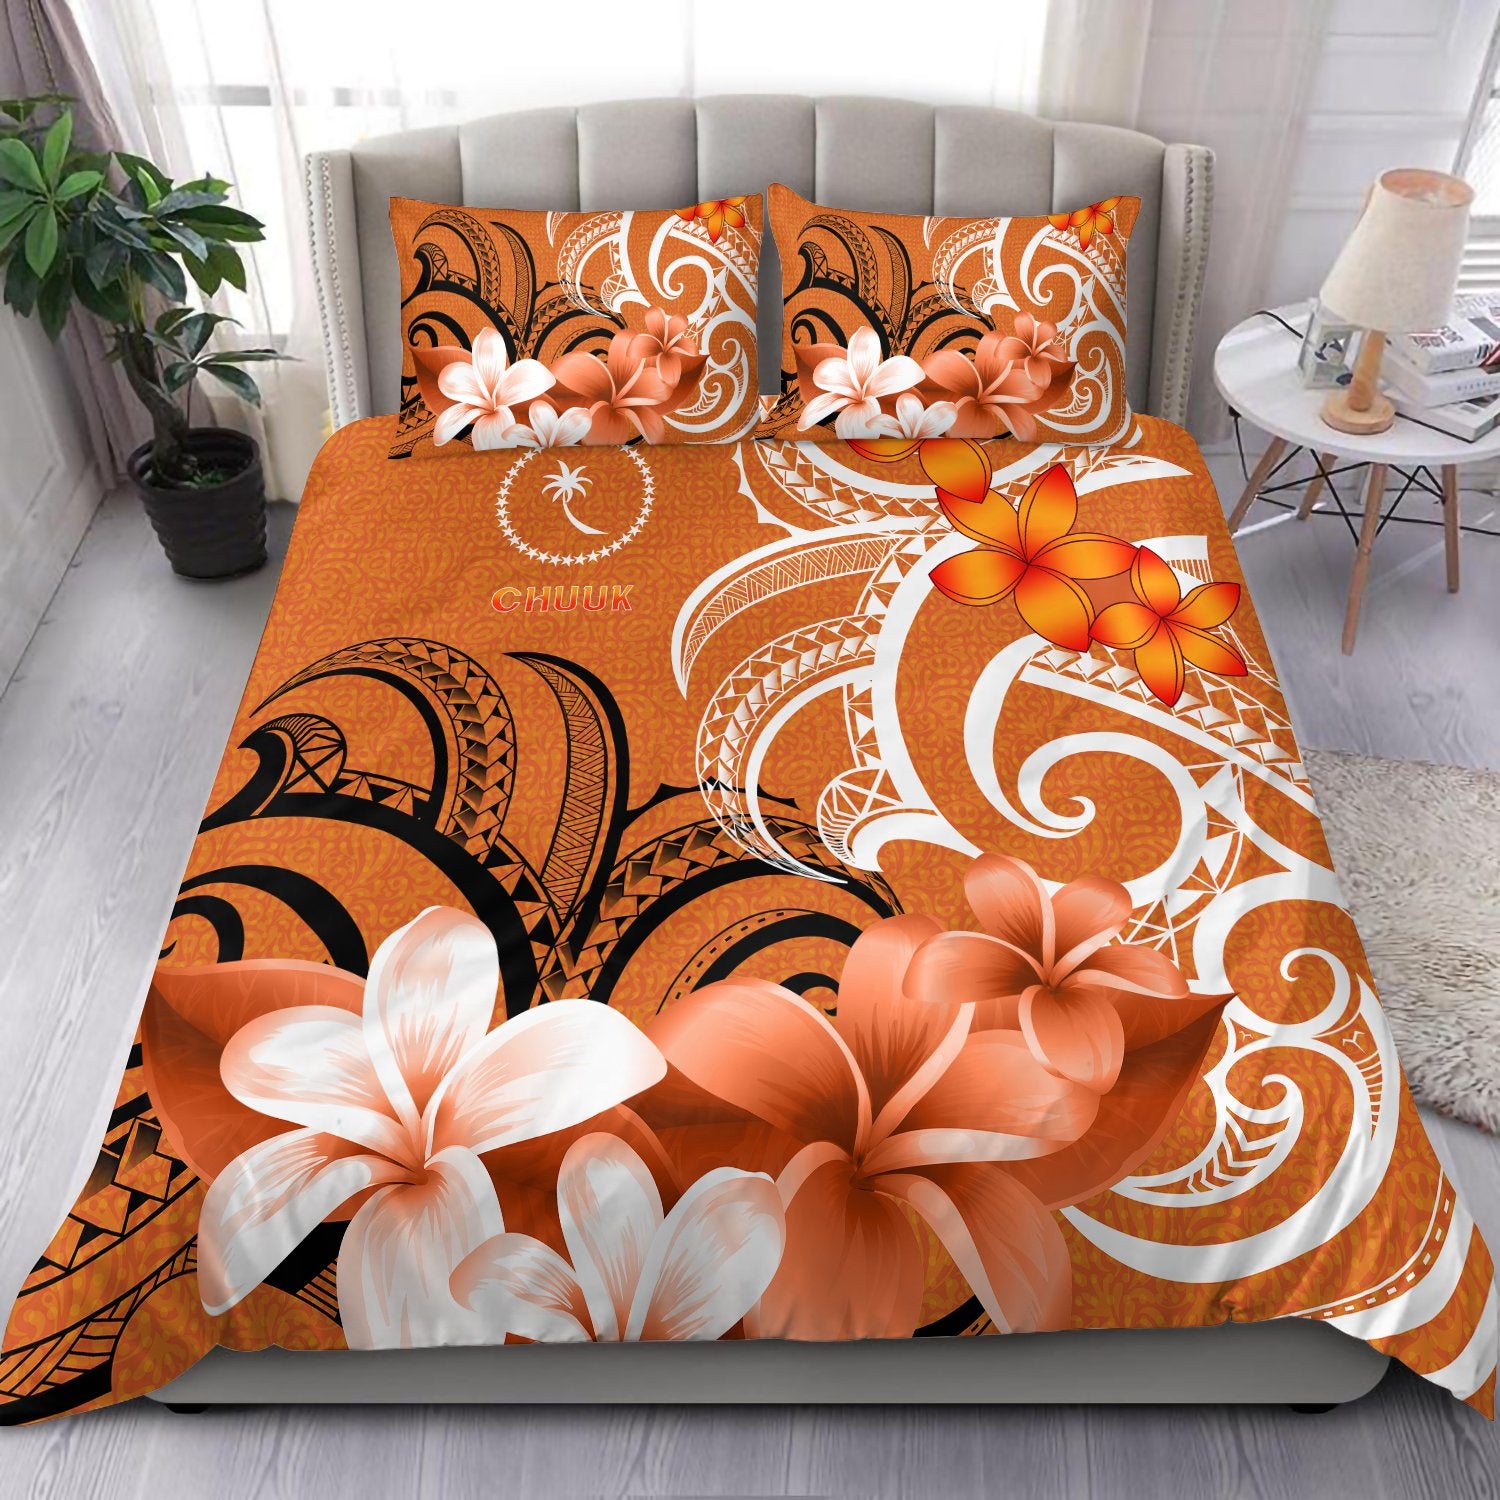 Chuuk Bedding Set - Chuuk Spirit Orange - Polynesian Pride